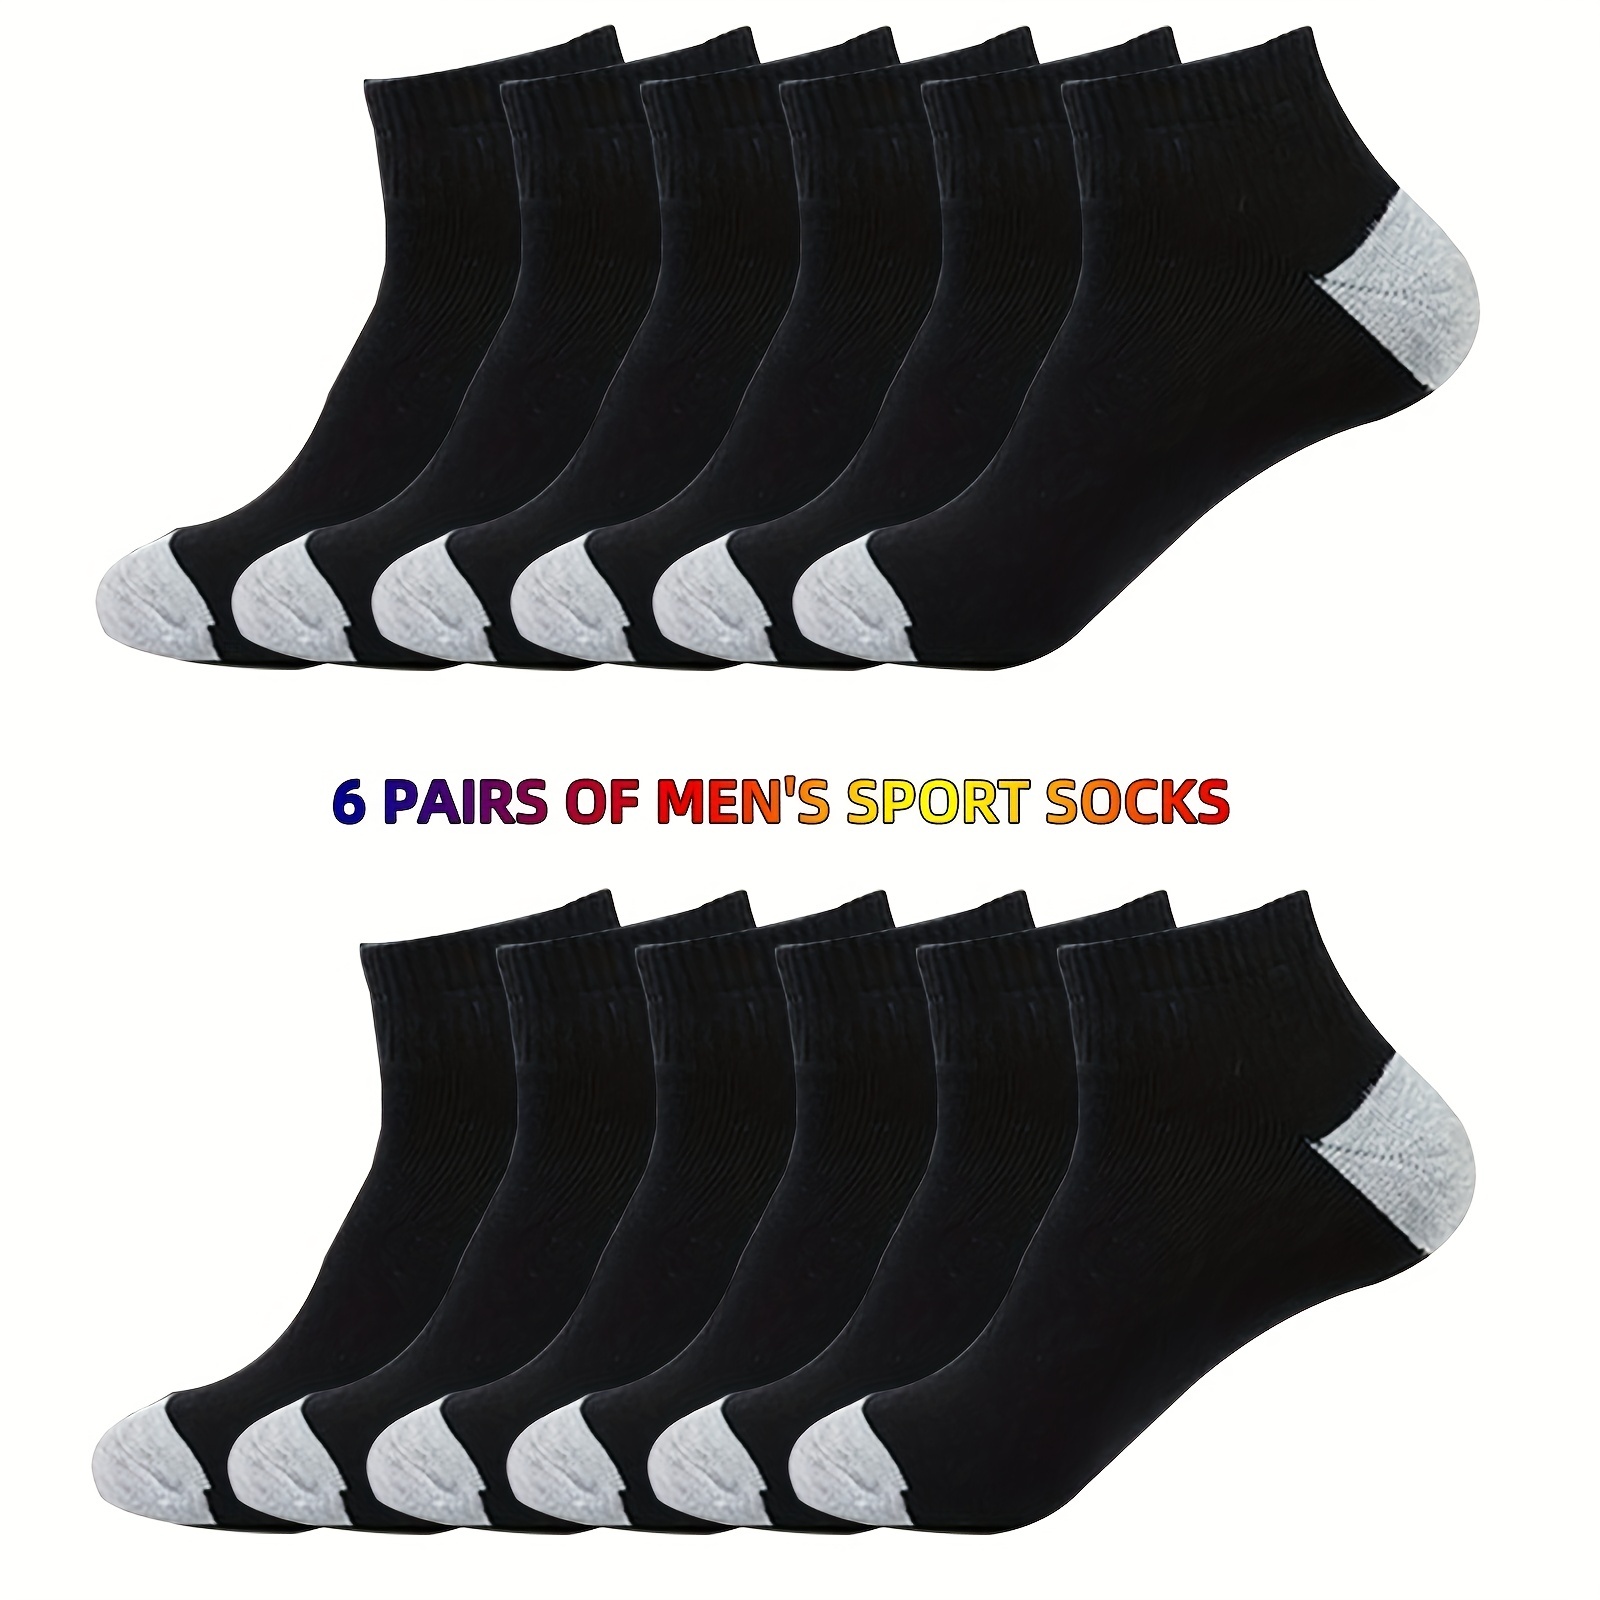 Calcetines de algodón para hombre, calcetines deportivos gruesos y